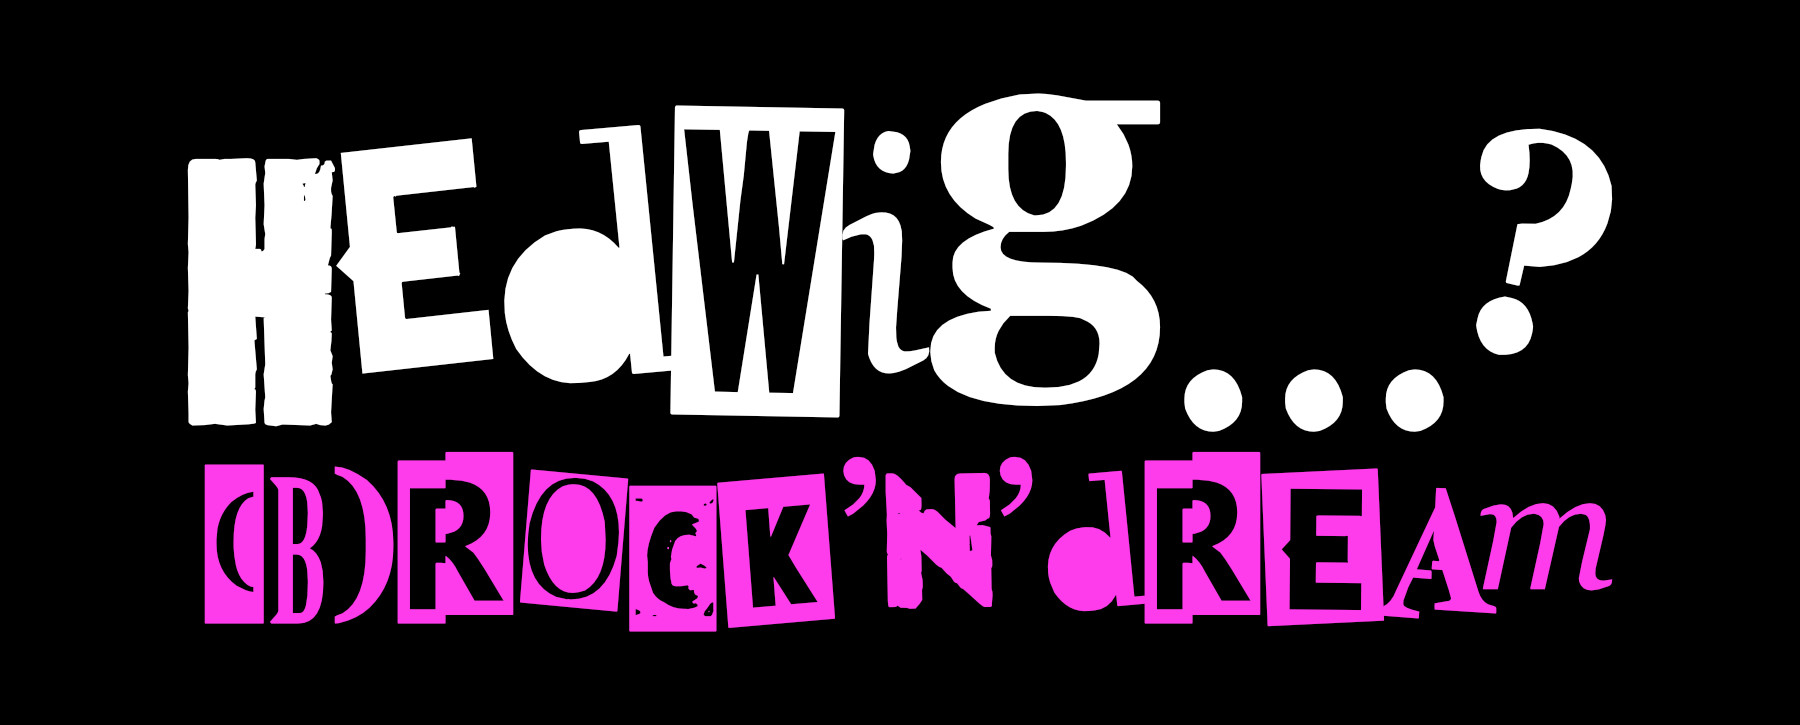 Hedwig…?(B)Rock’n’dream